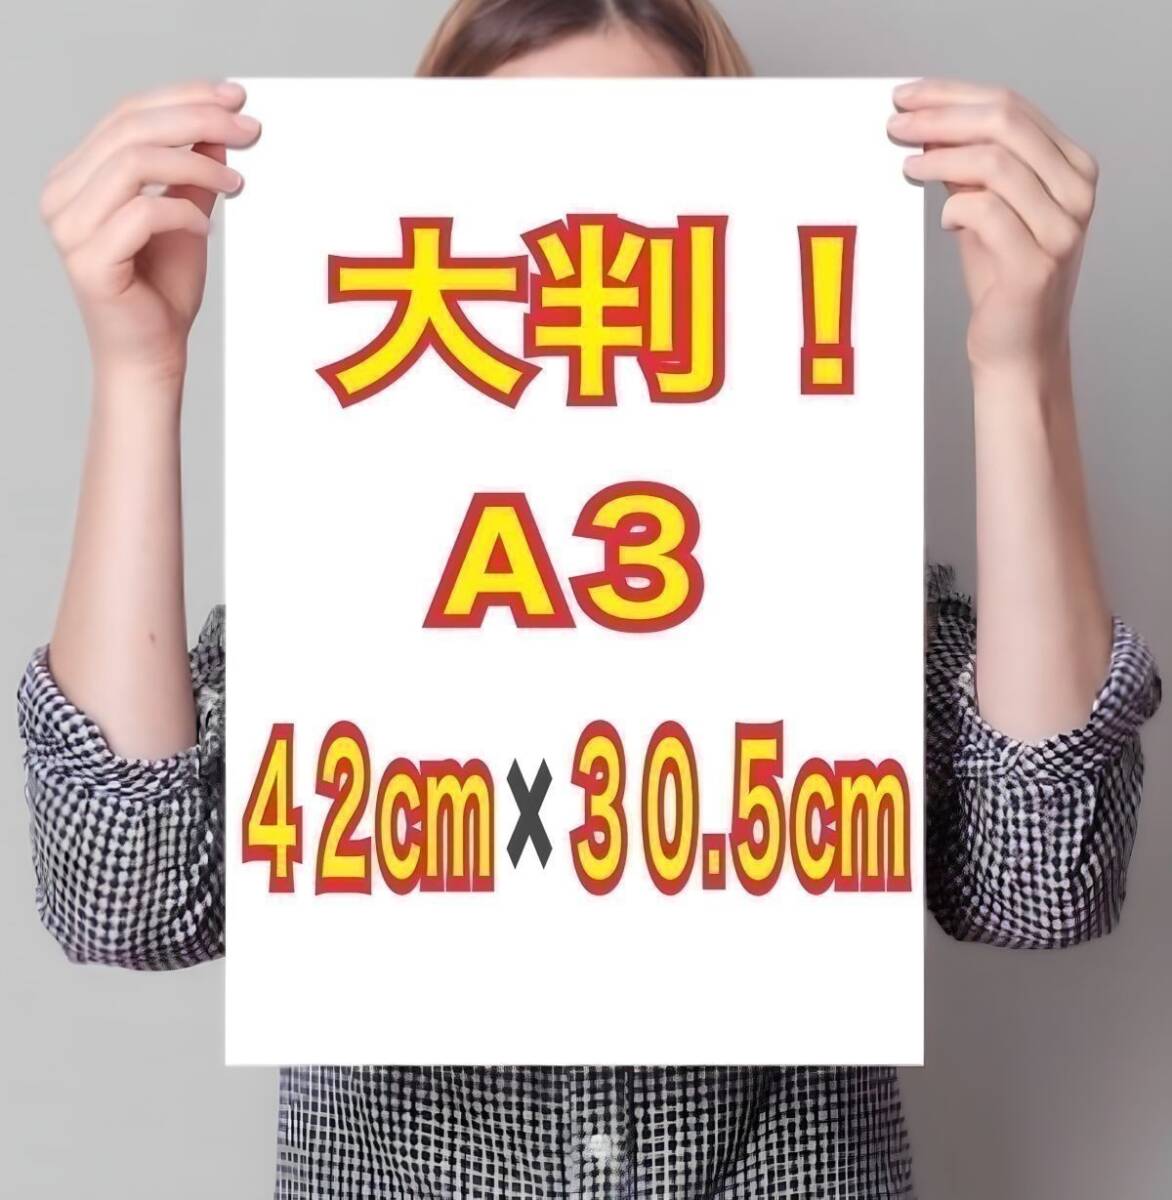  иностранная модель A3 постер супер глянец большой размер 42cm×30.5cm! life photograph *936* Junior идол в натуральную величину способ L